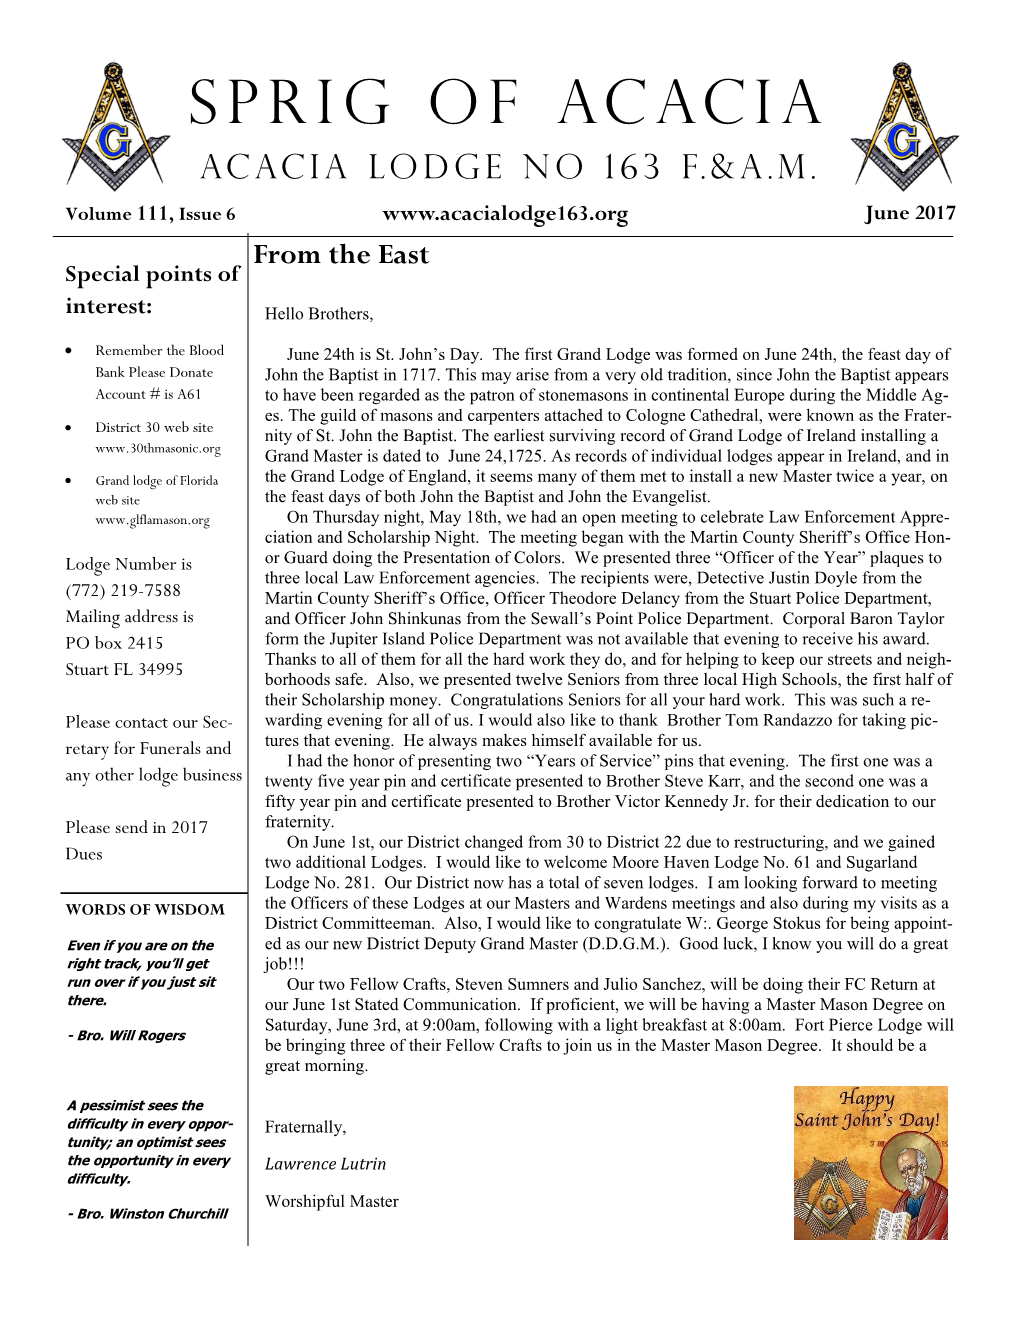 Sprig of Acacia Acacia Lodge NO 163 F.&A.M